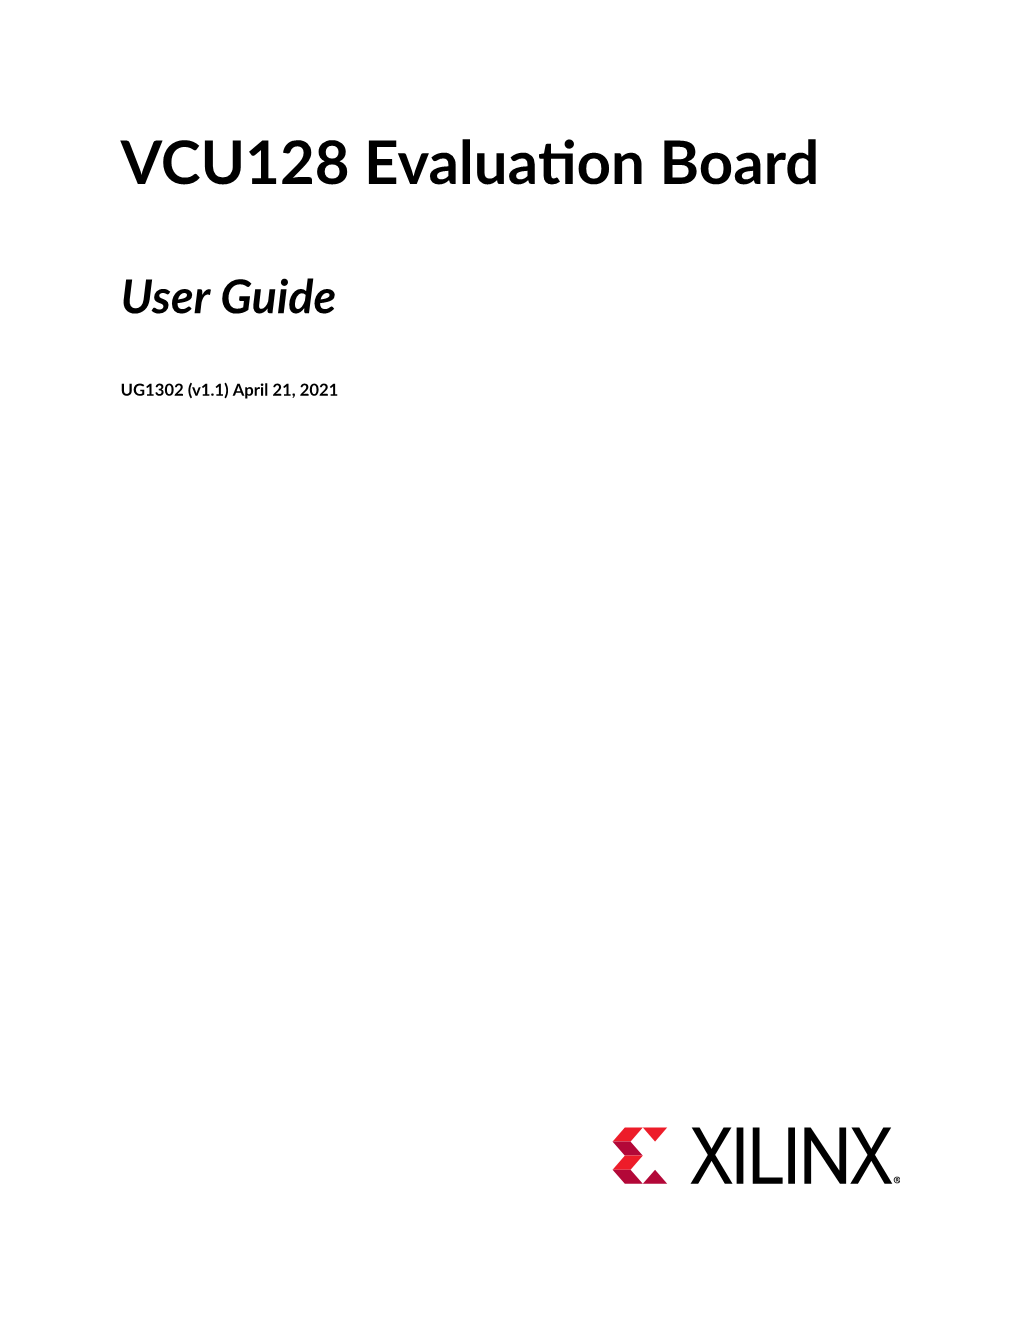 VCU128 Evaluation Board User Guide